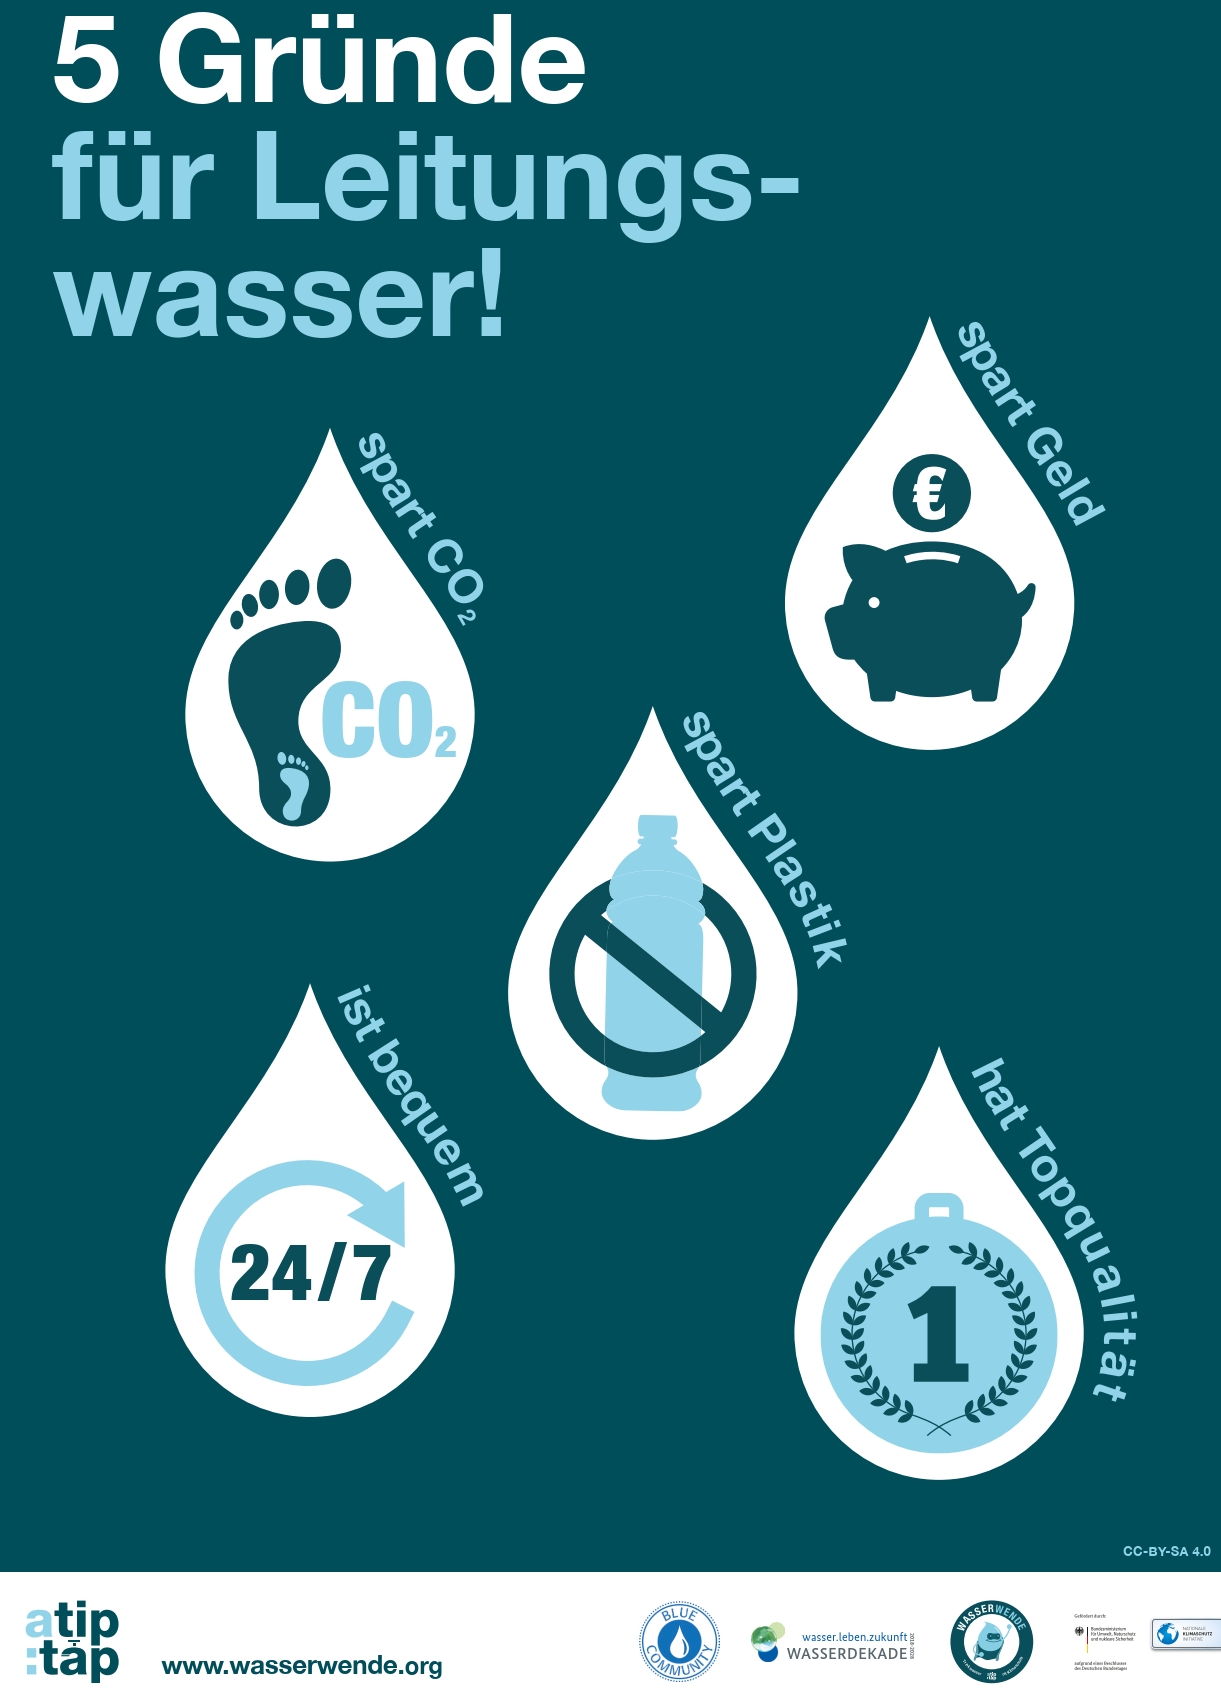 Fünf Gründe für Leitungswasser: Spart CO2, spart Geld, spart Plastik, ist bequem und hat eine Topqualität. Quelle: www.atiptap.org